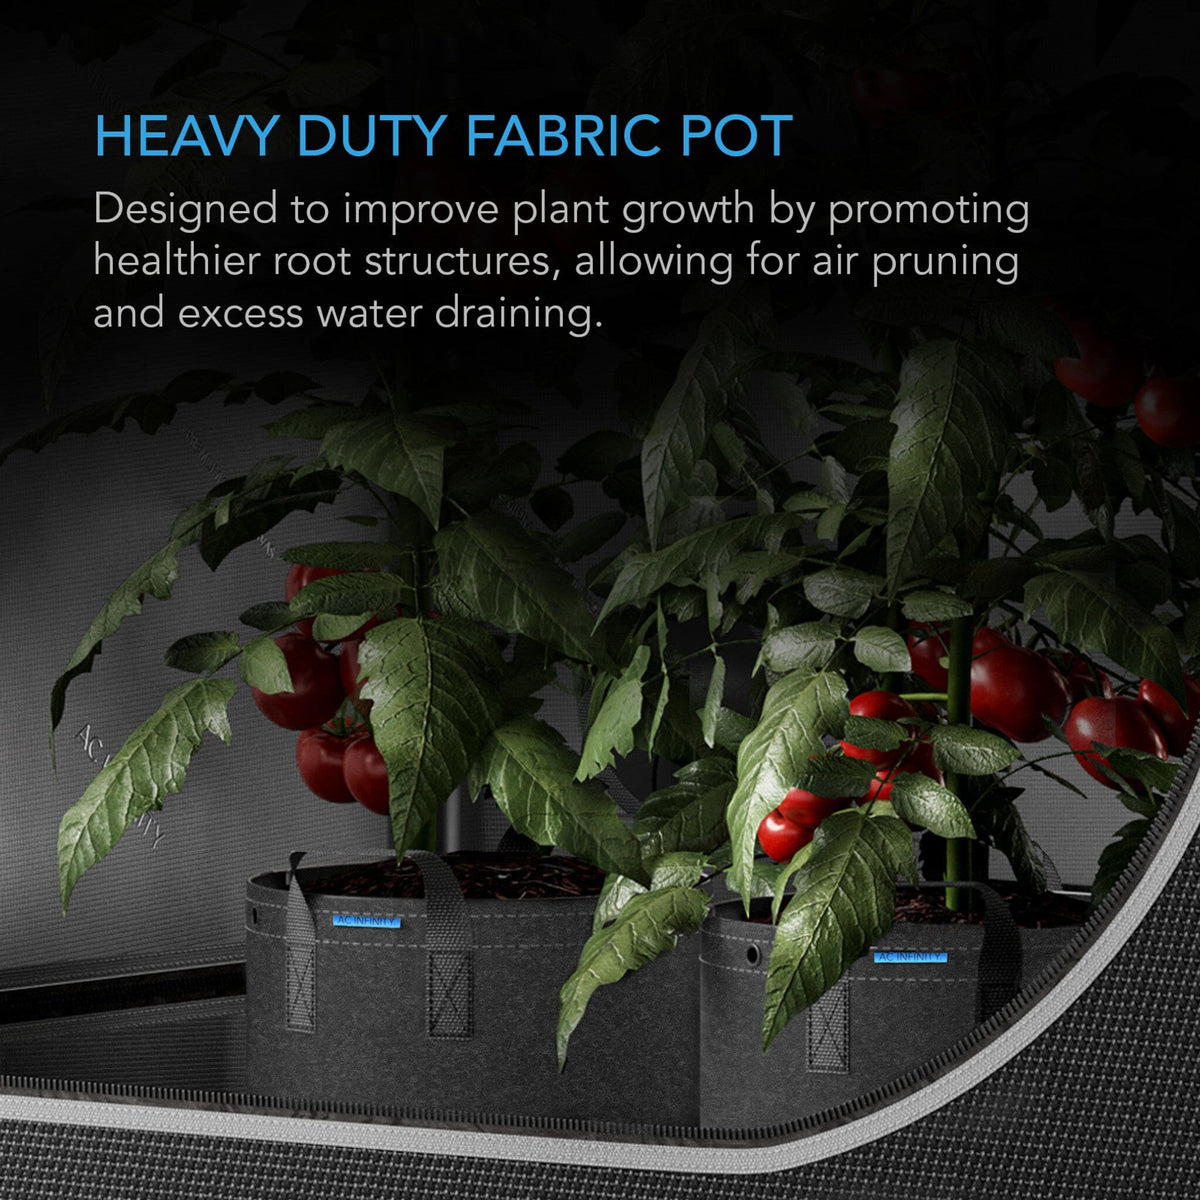 Heavy duty fabric pot